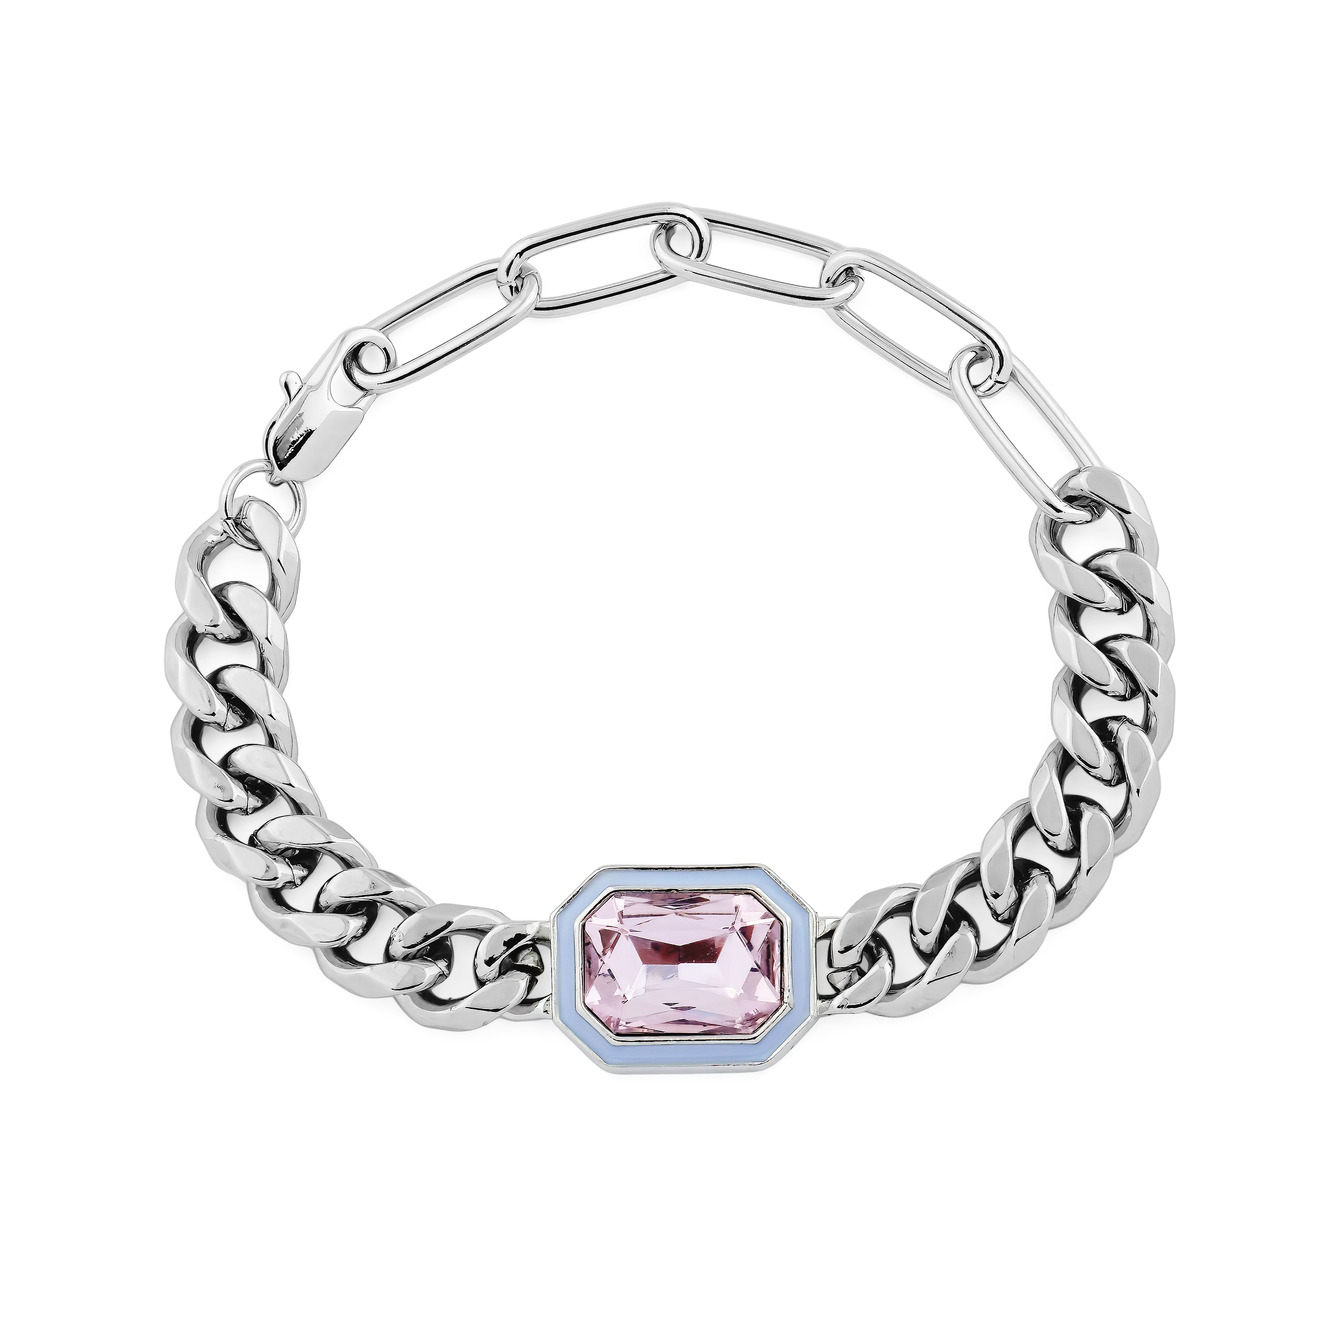 Herald Percy Серебристый браслет из цепи крупного плетения с розовым кристаллом herald percy серебристый браслет из цепи крупного плетения с розовым кристаллом